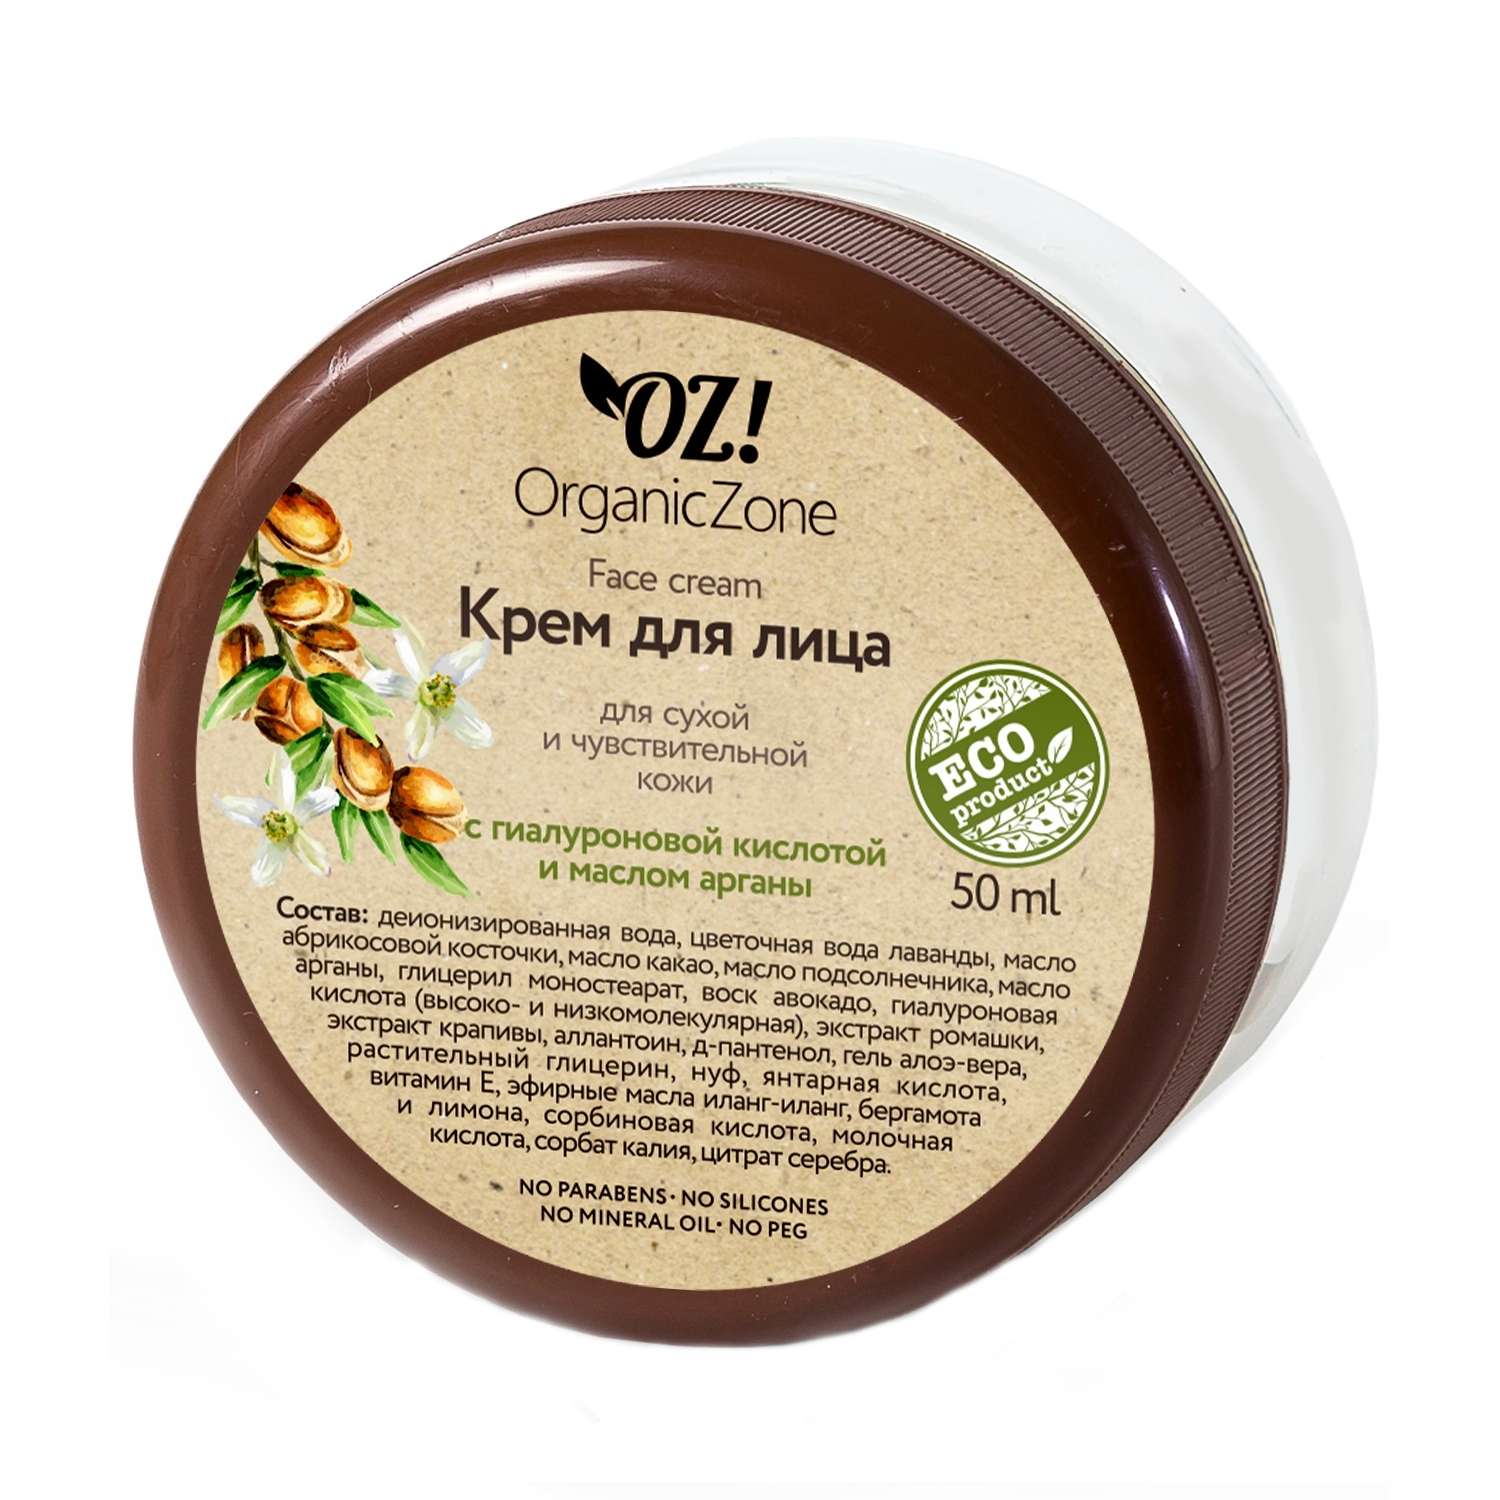 Крем для лица OrganicZone С гиалуроновой кислотой и маслом арганы для сухой и чувствительной кожи - фото 1